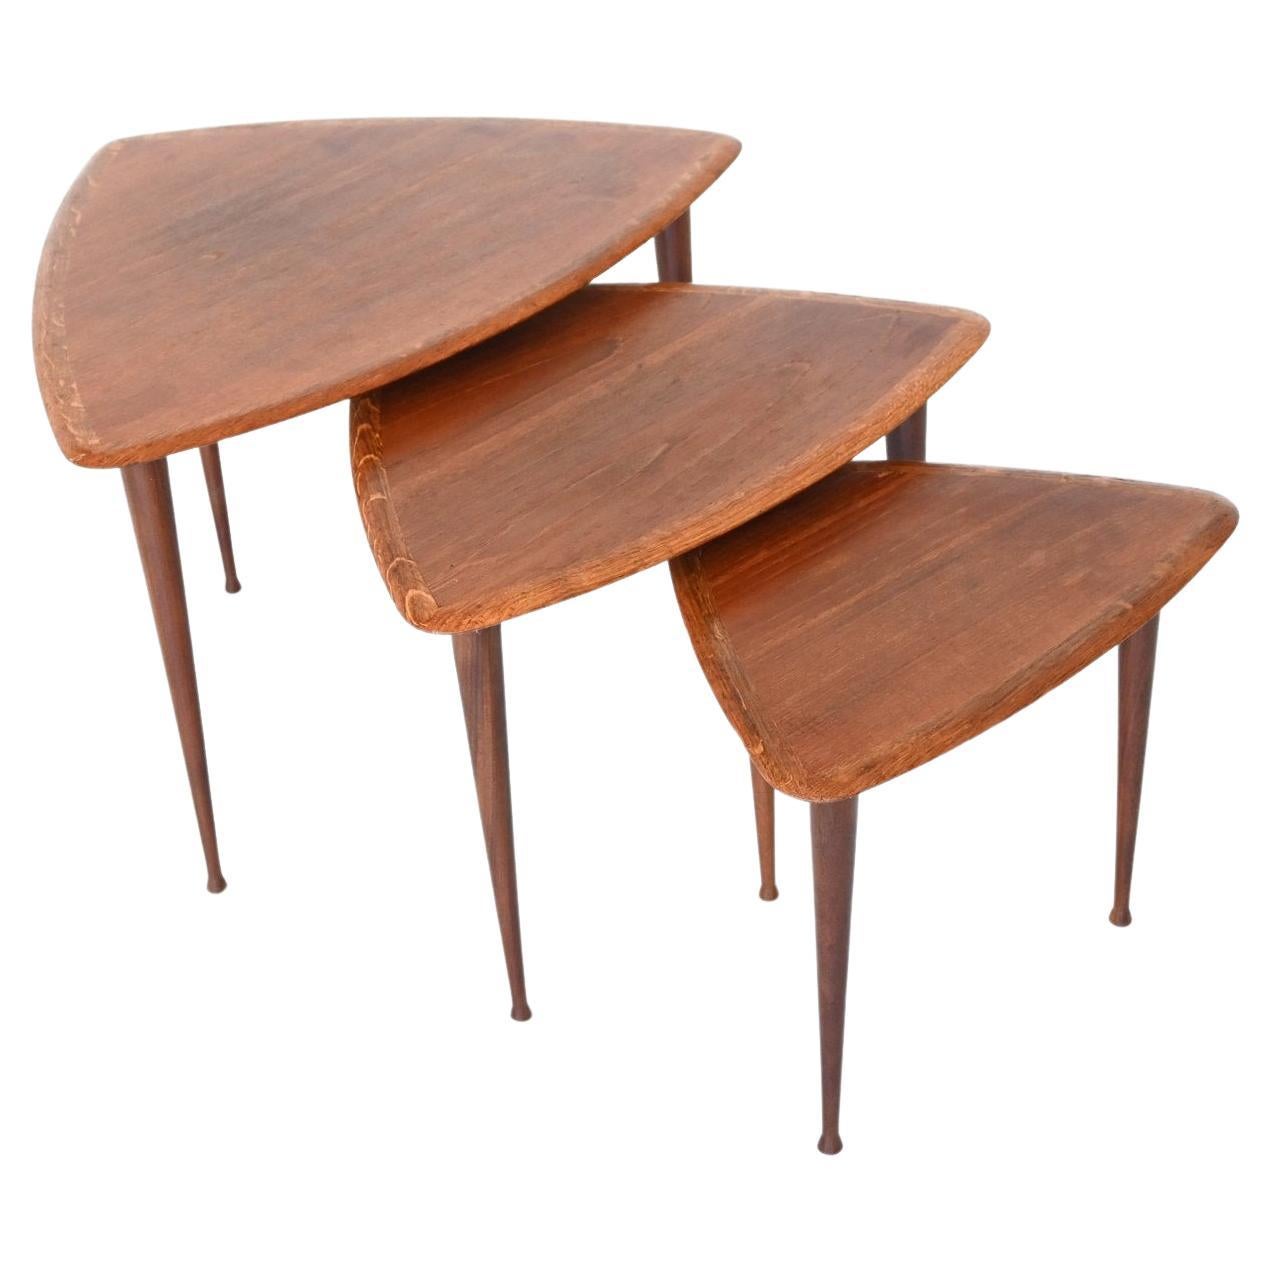 Poul Jensen Style Nesting Tables Teak Wood Denmark 1960